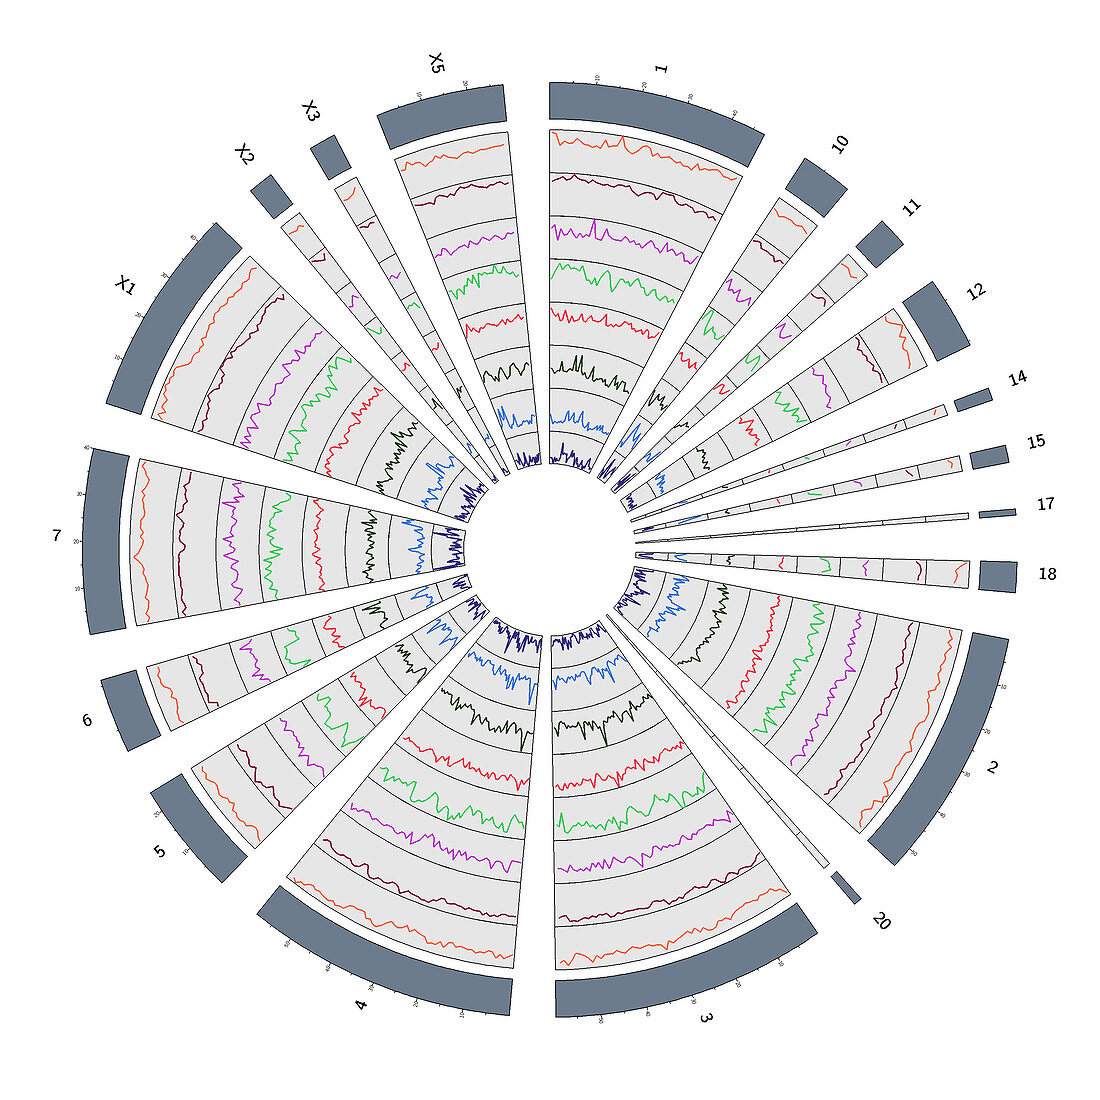 Circos, Circular Genome Map, Platypus